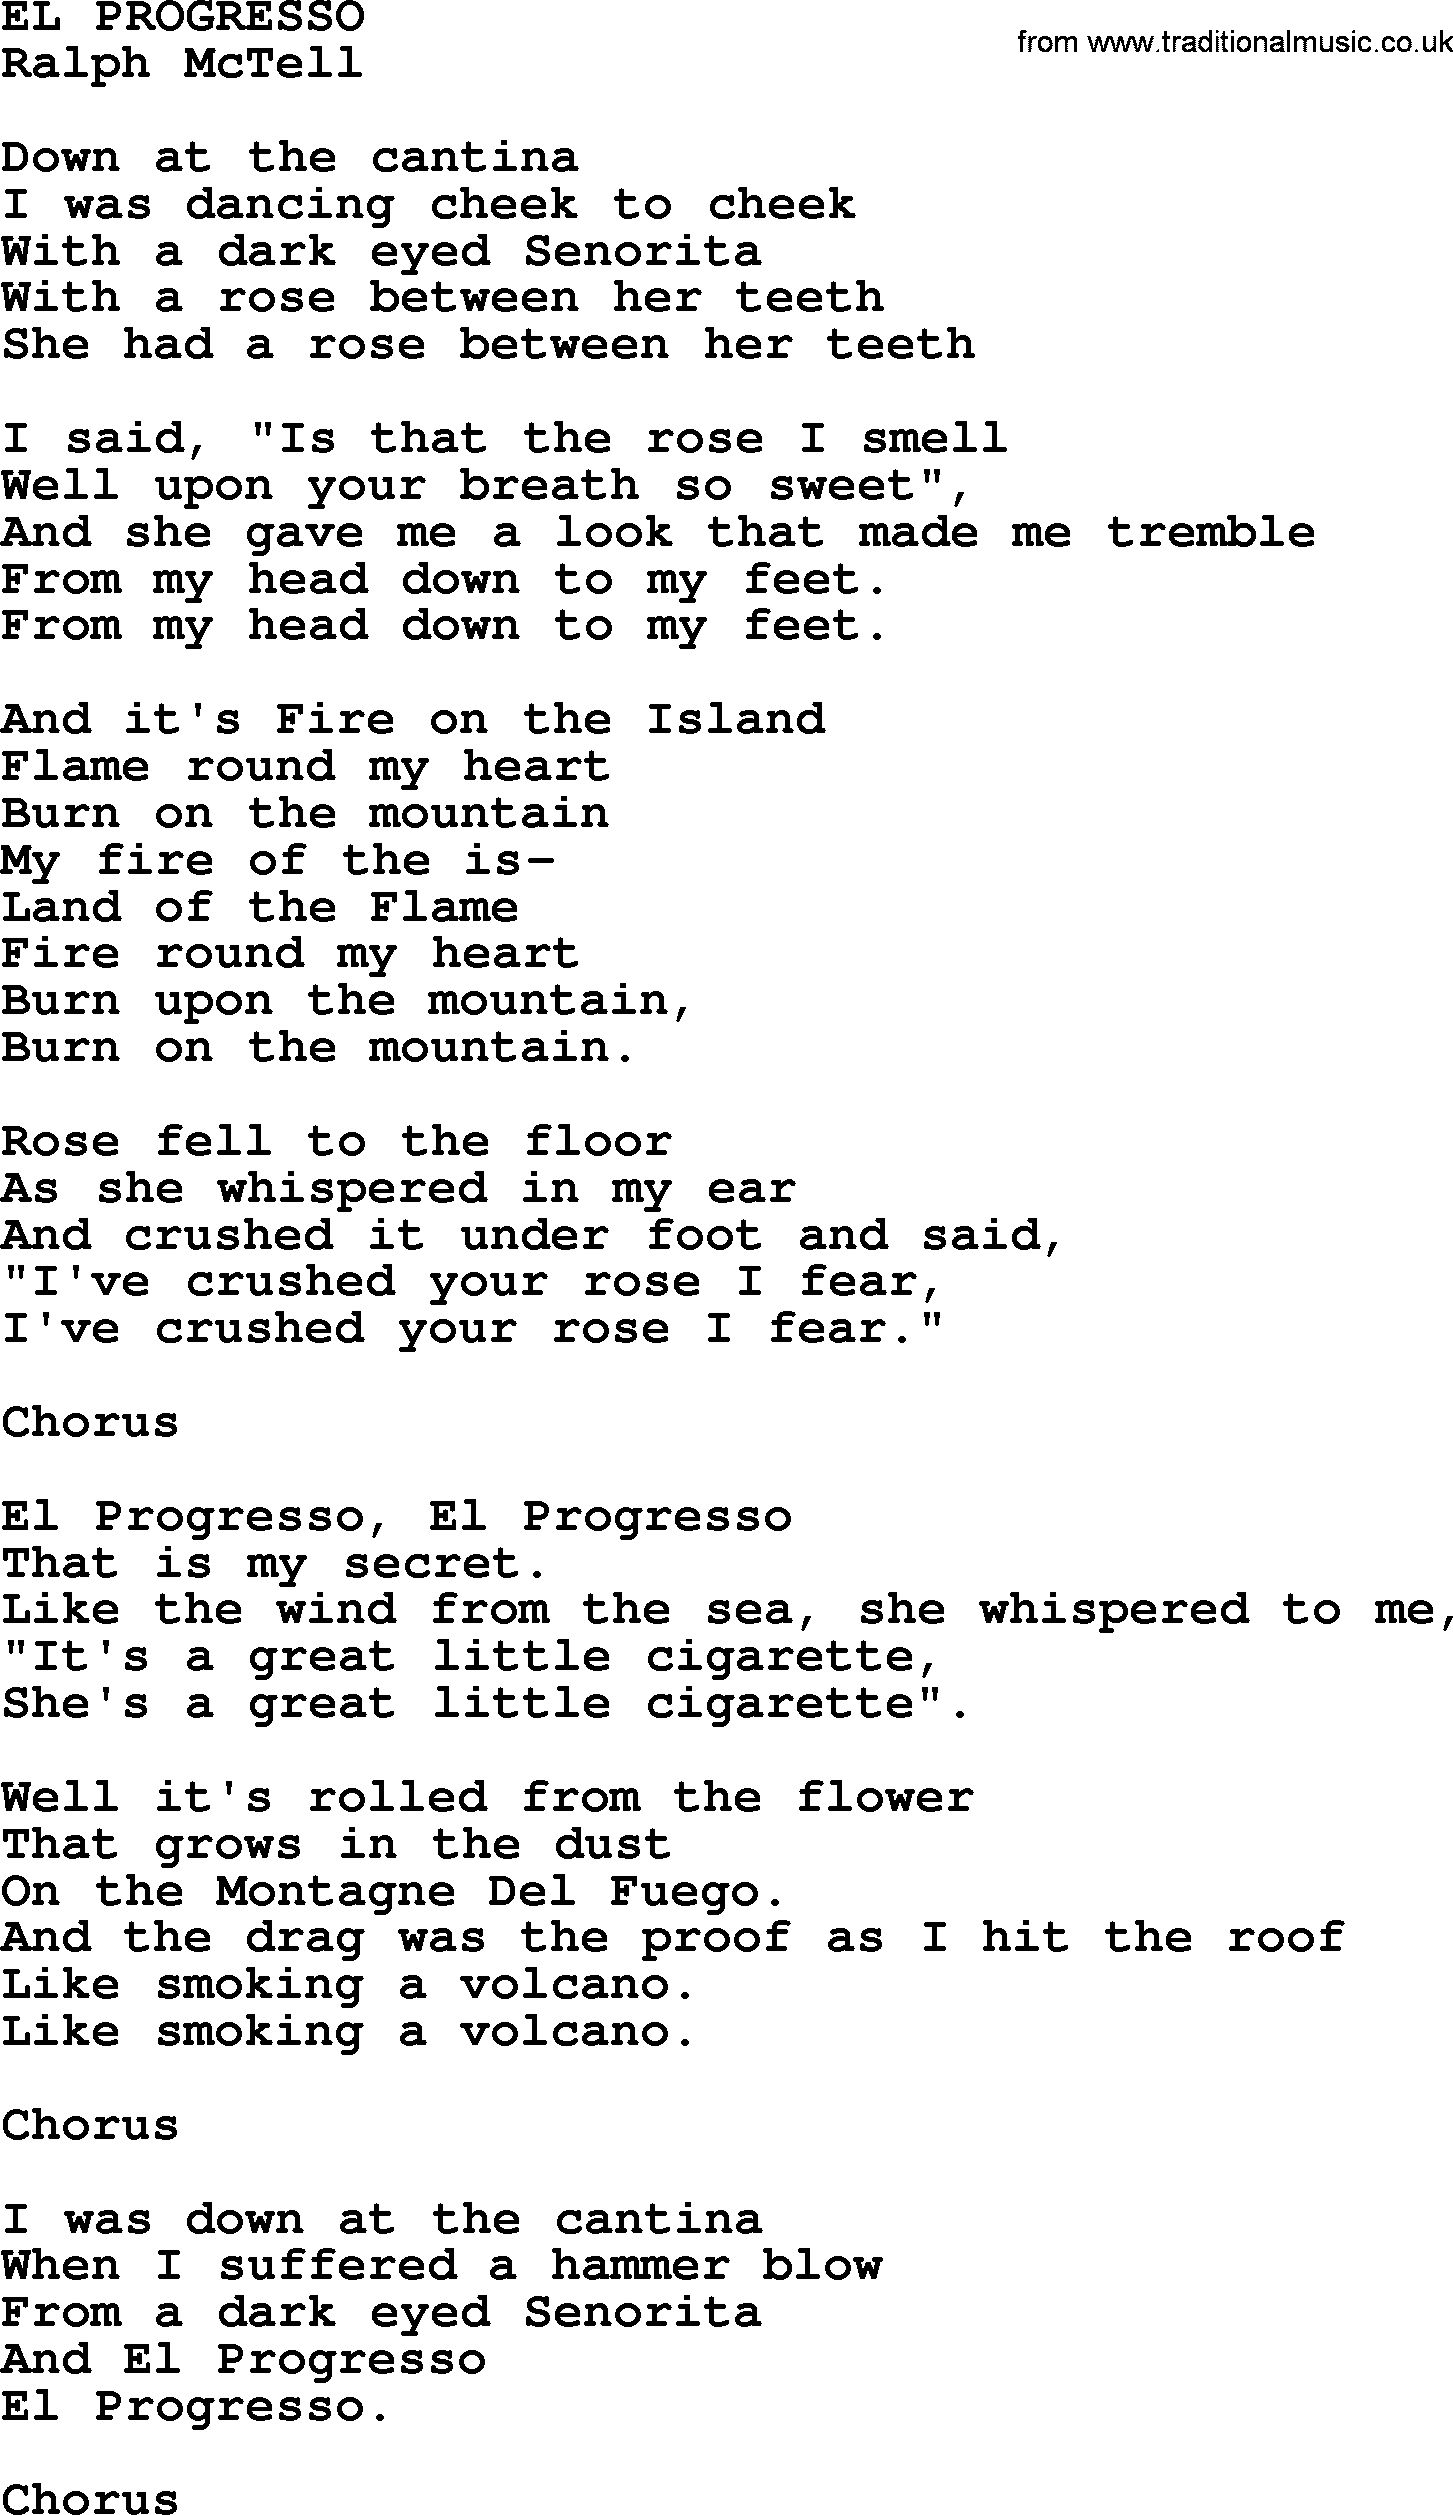 Ralph McTell Song: El Progresso, lyrics